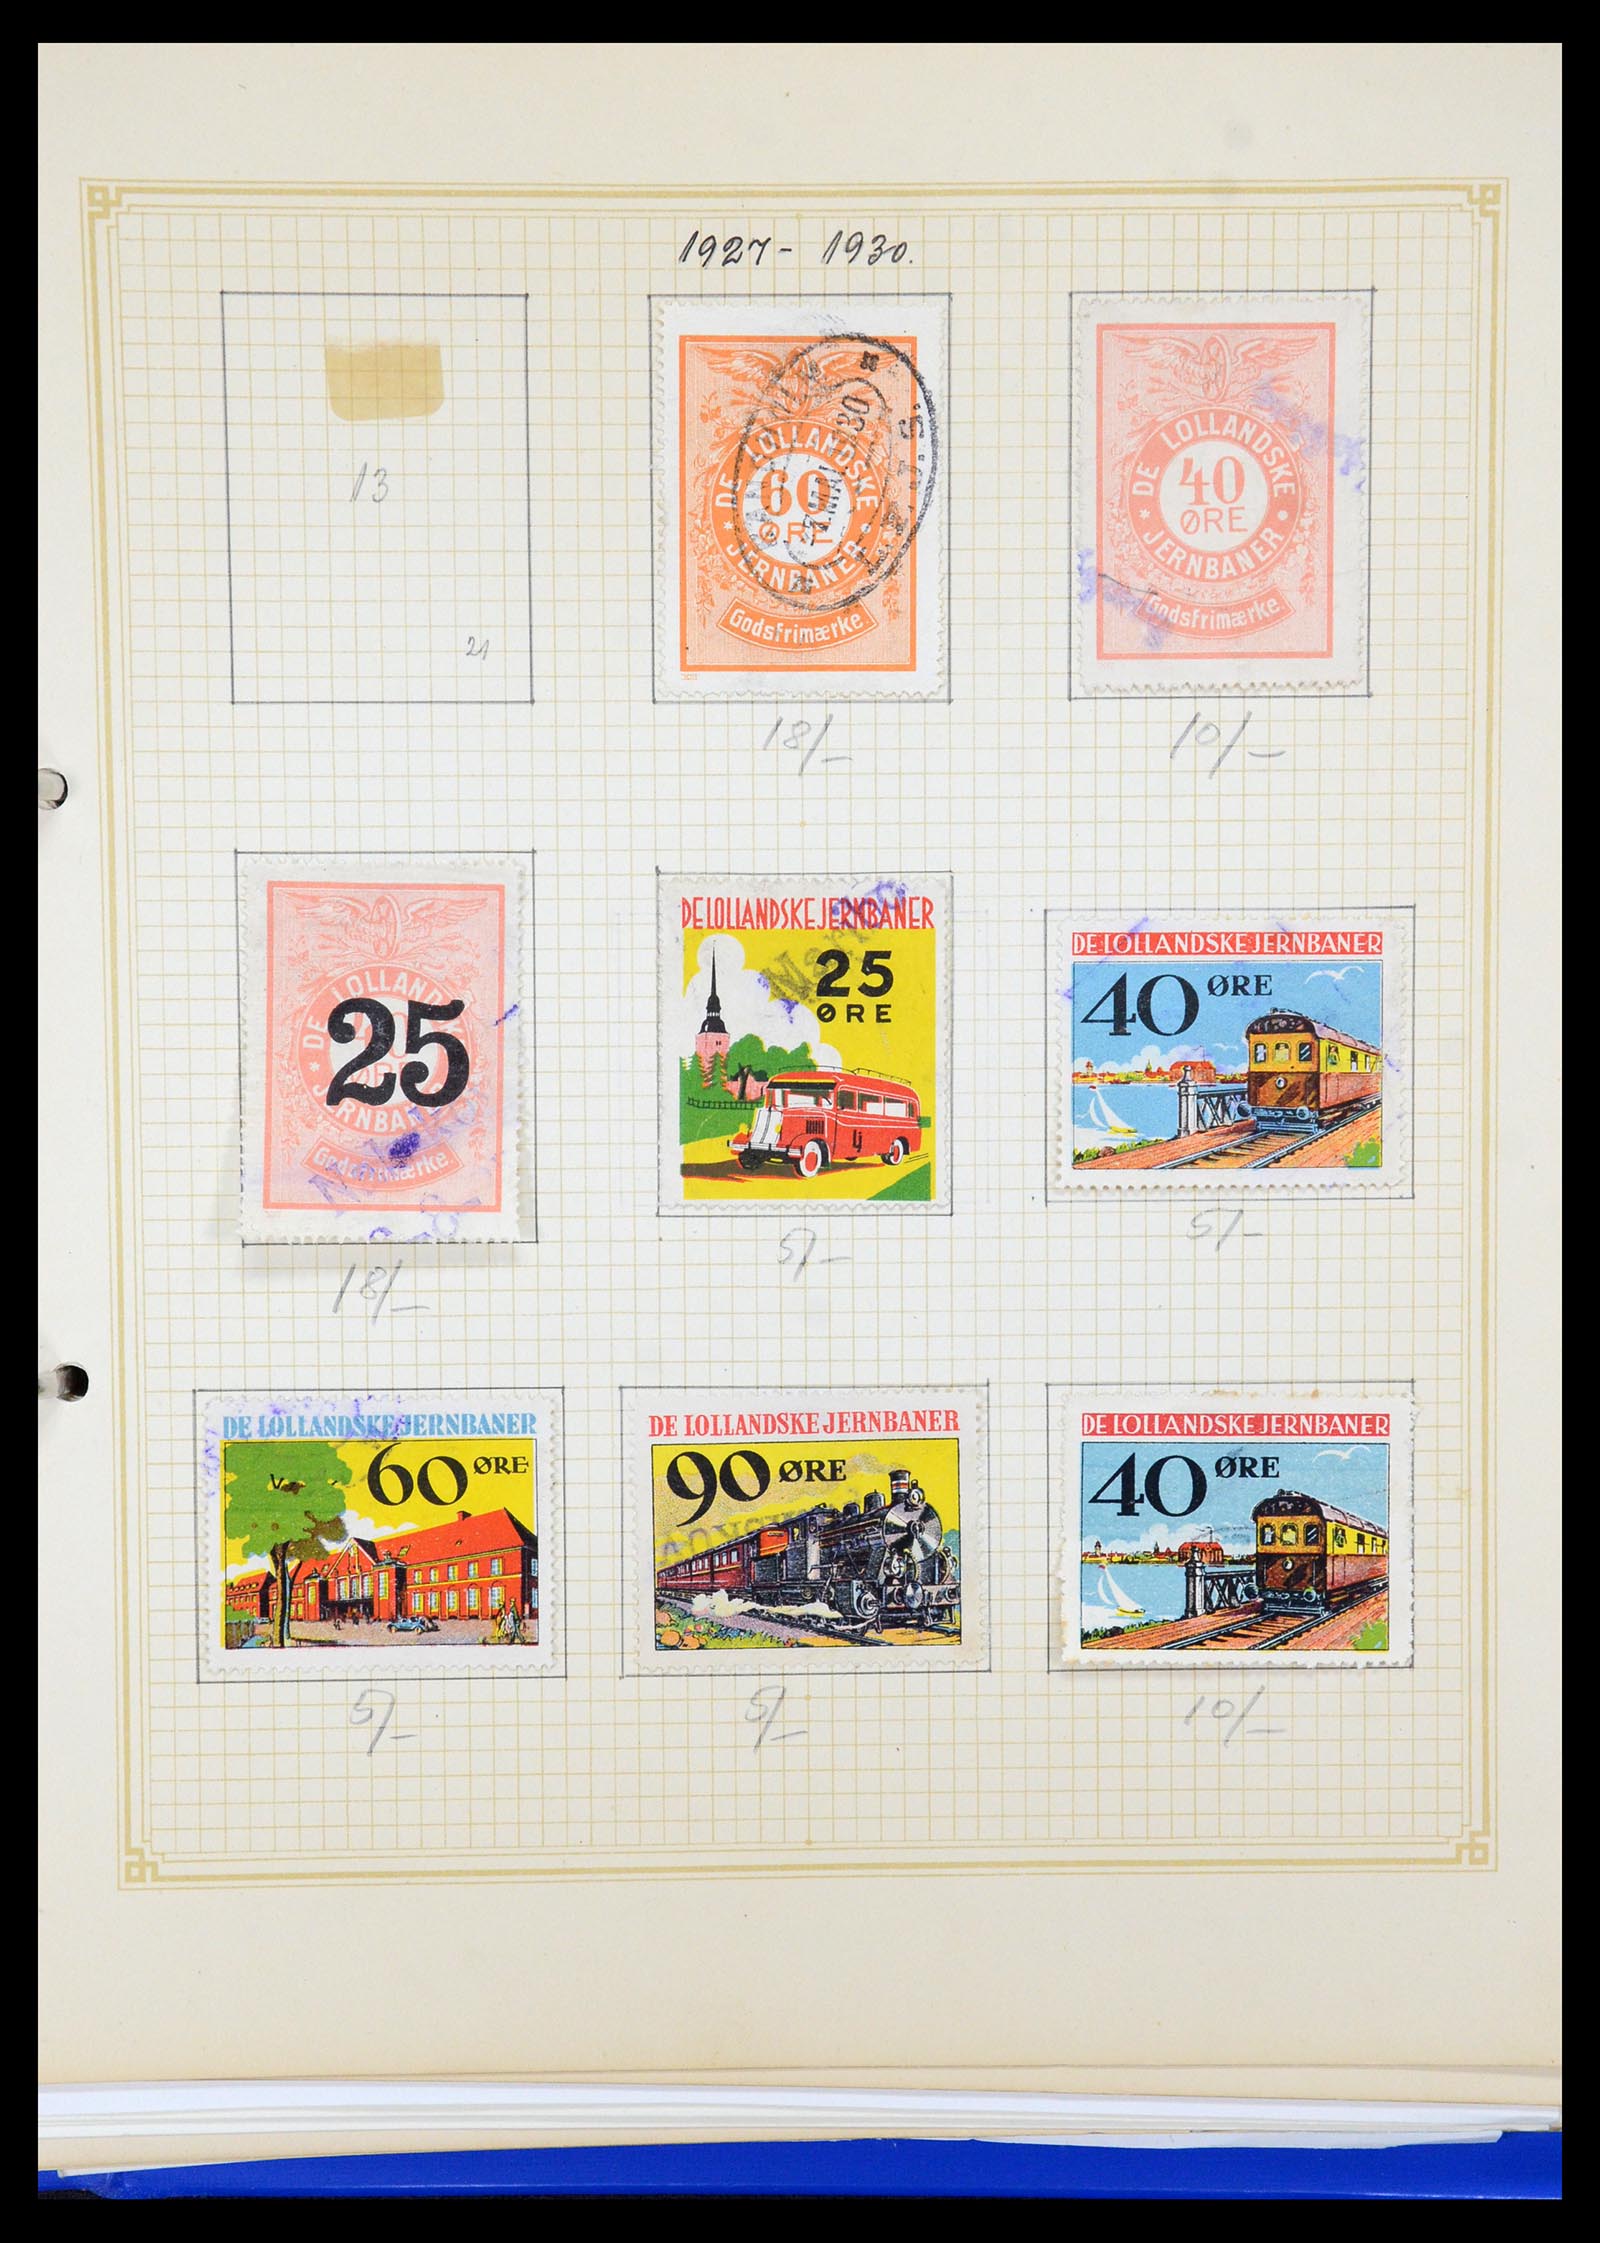 35650 048 - Postzegelverzameling 35650 Denemarken spoorwegzegels.